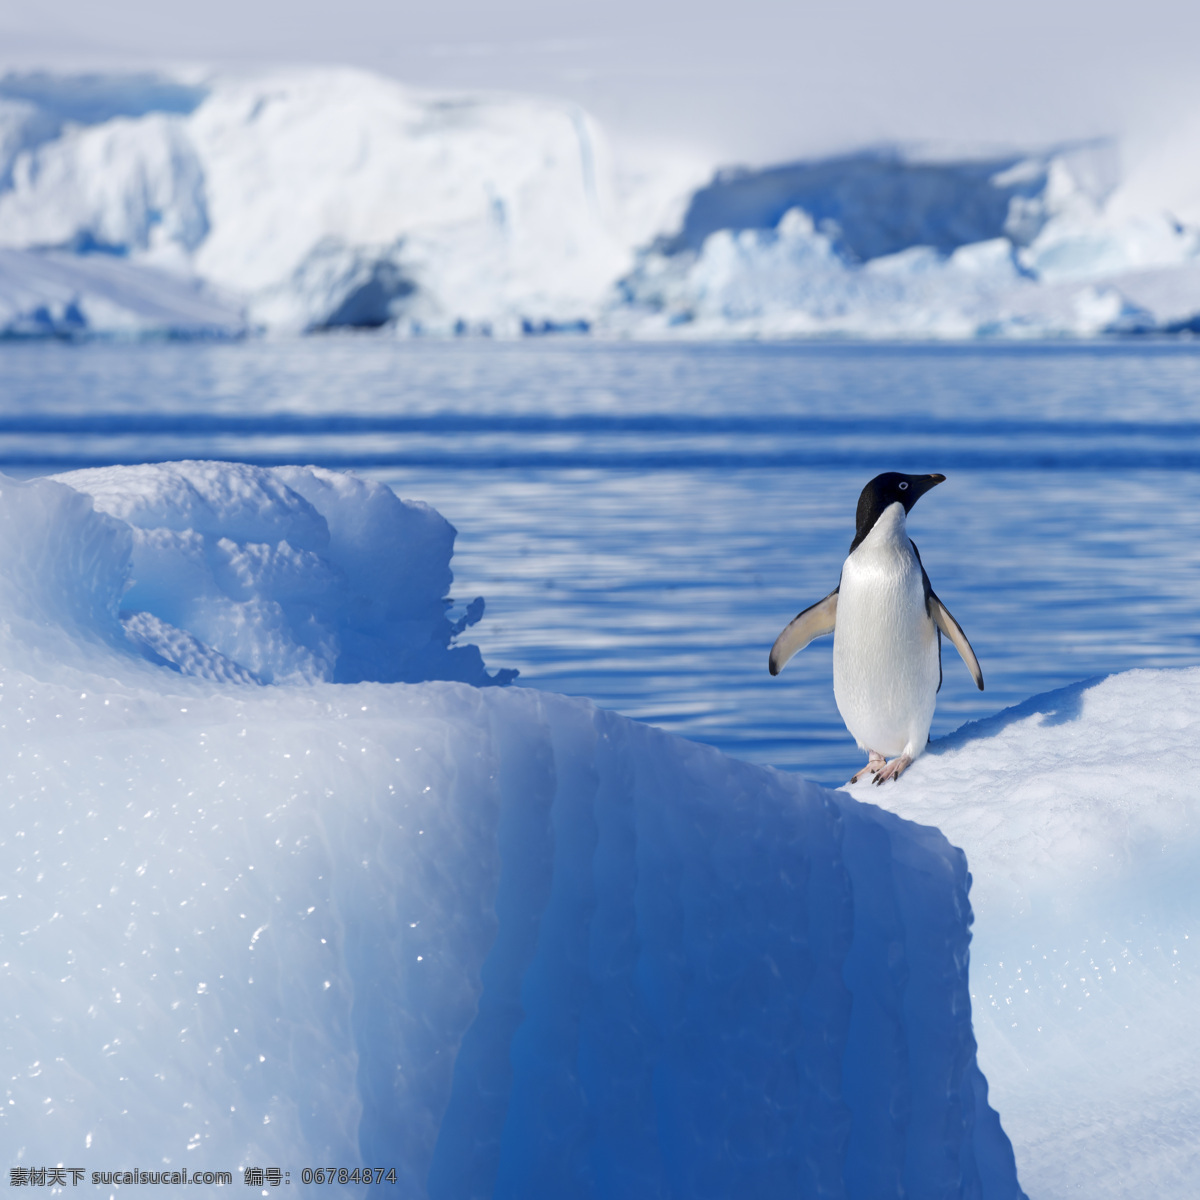 冰山 中 只 企鹅 中的 一只 北极 雪地 雪山 生物世界 海洋生物